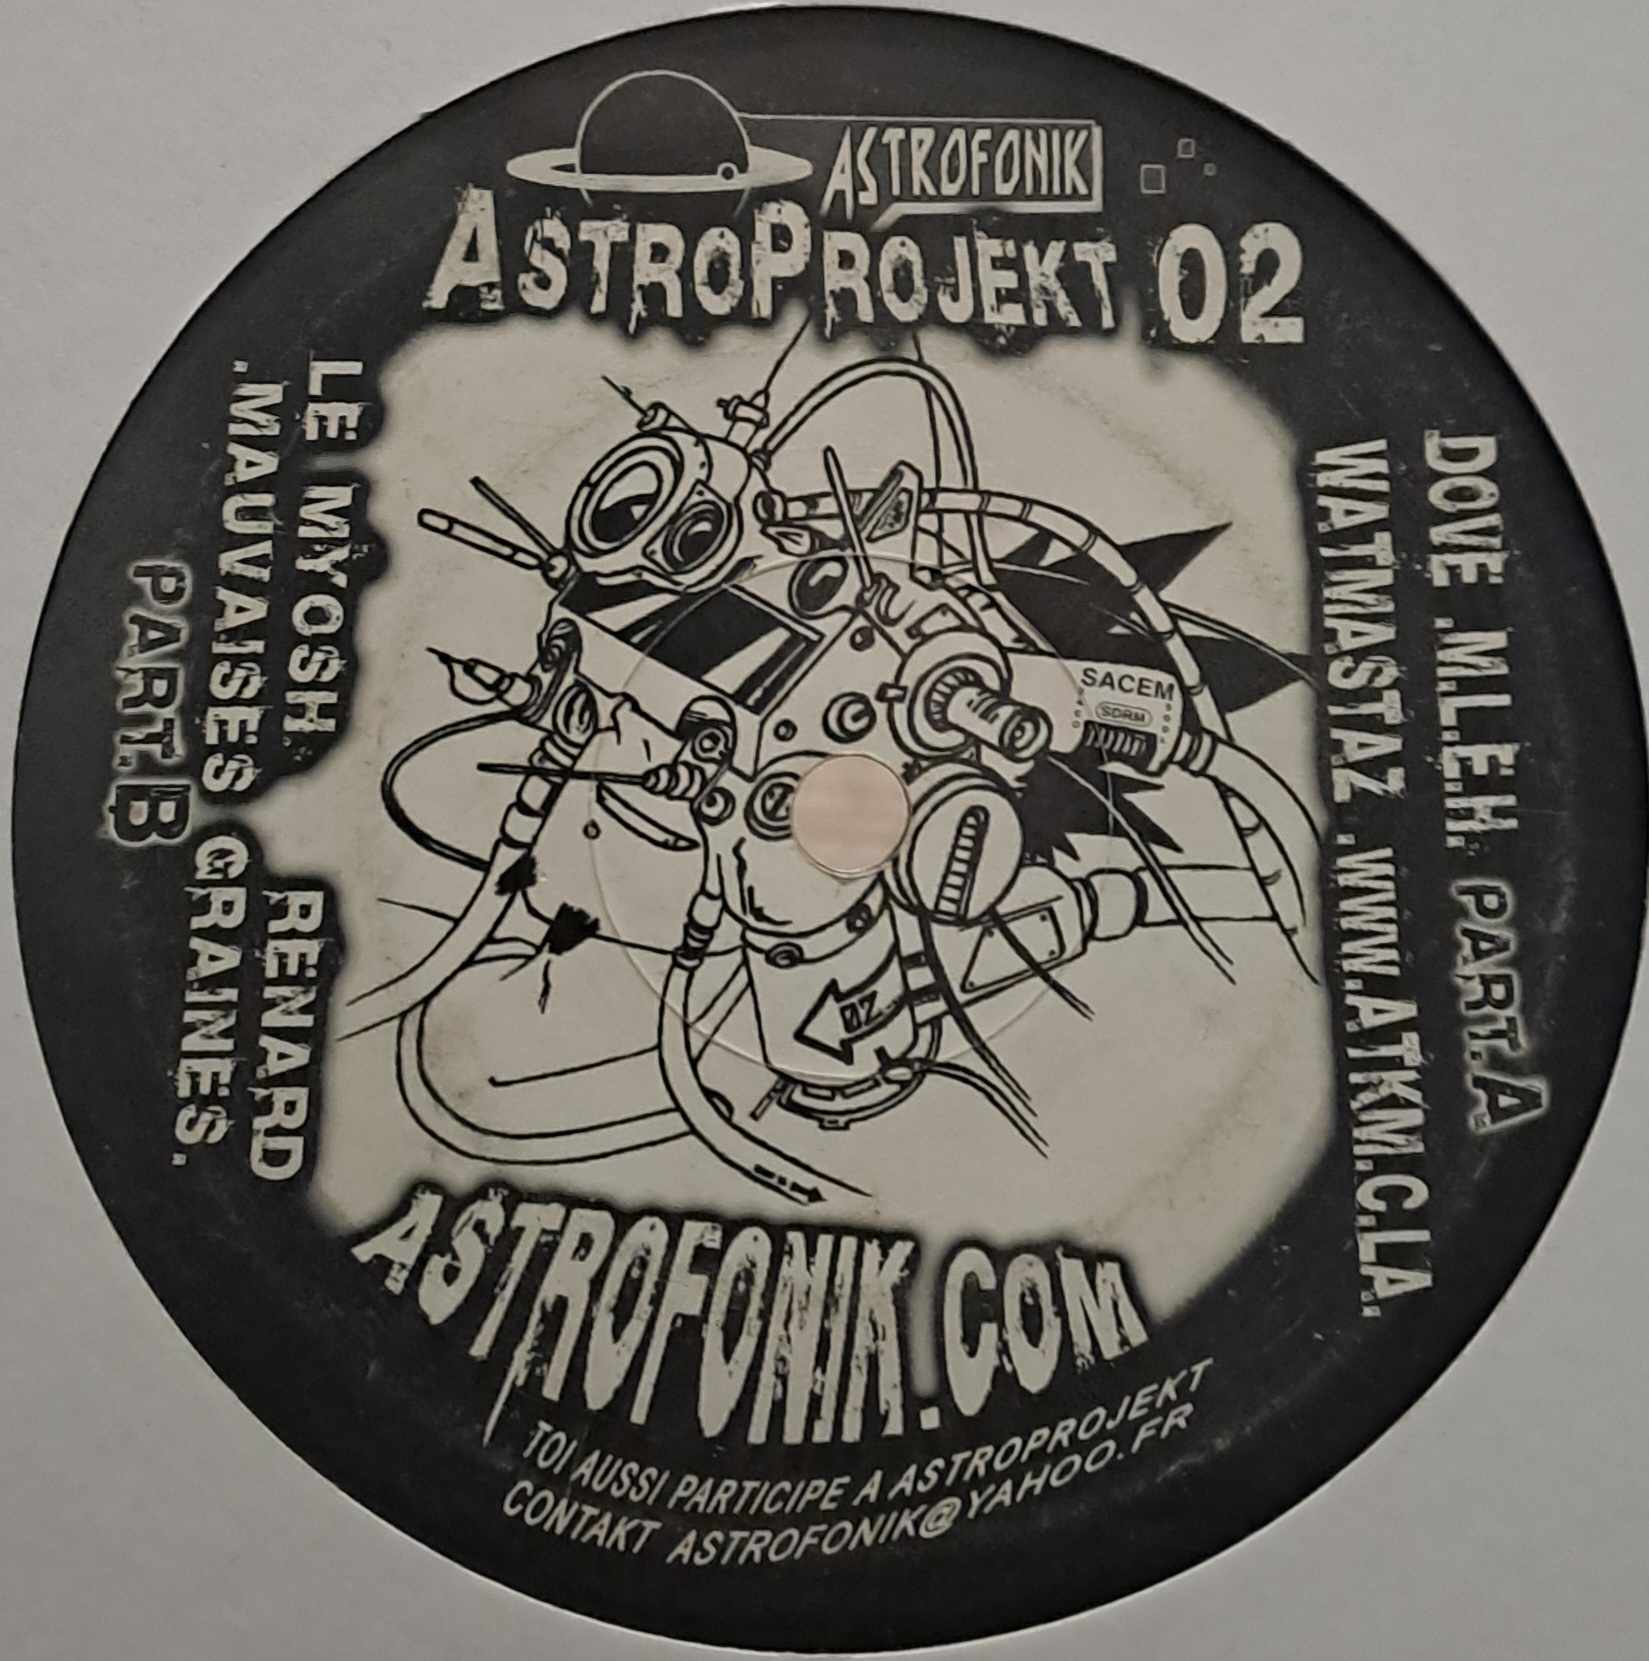 Astroprojekt 02 - vinyle freetekno